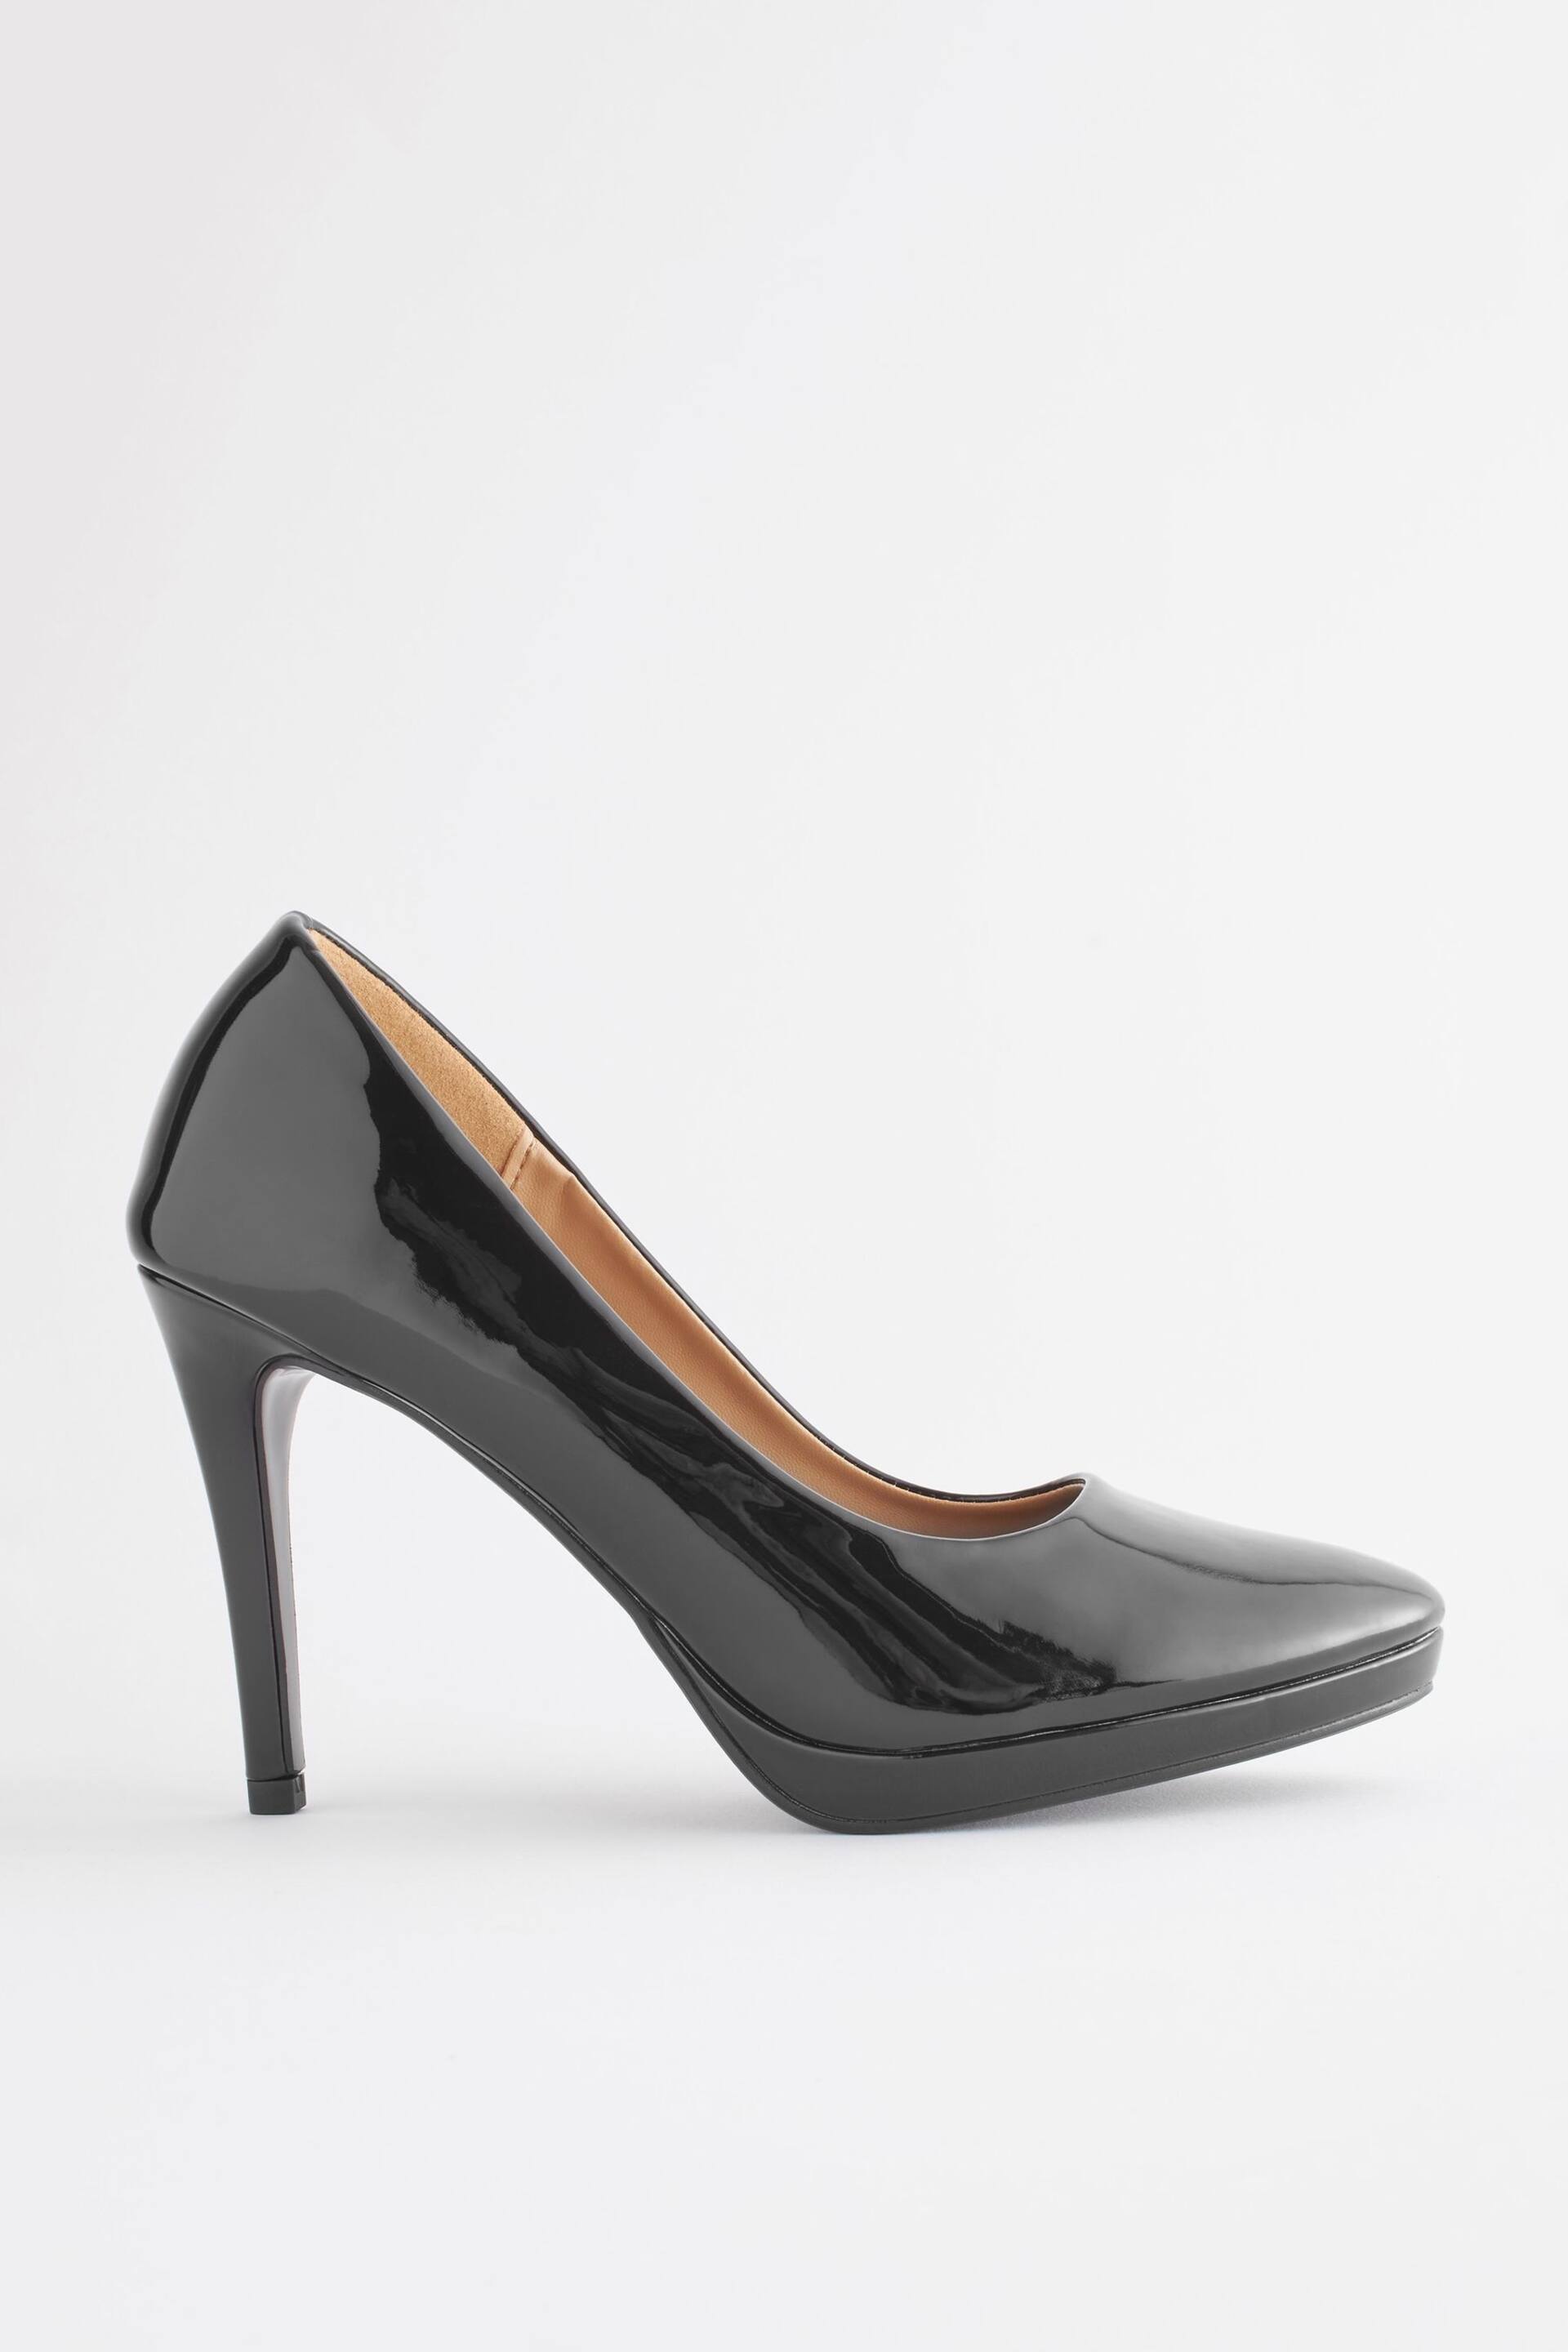 Black Regular/Wide Fit Forever Comfort® Platform Court Shoes - Image 4 of 7